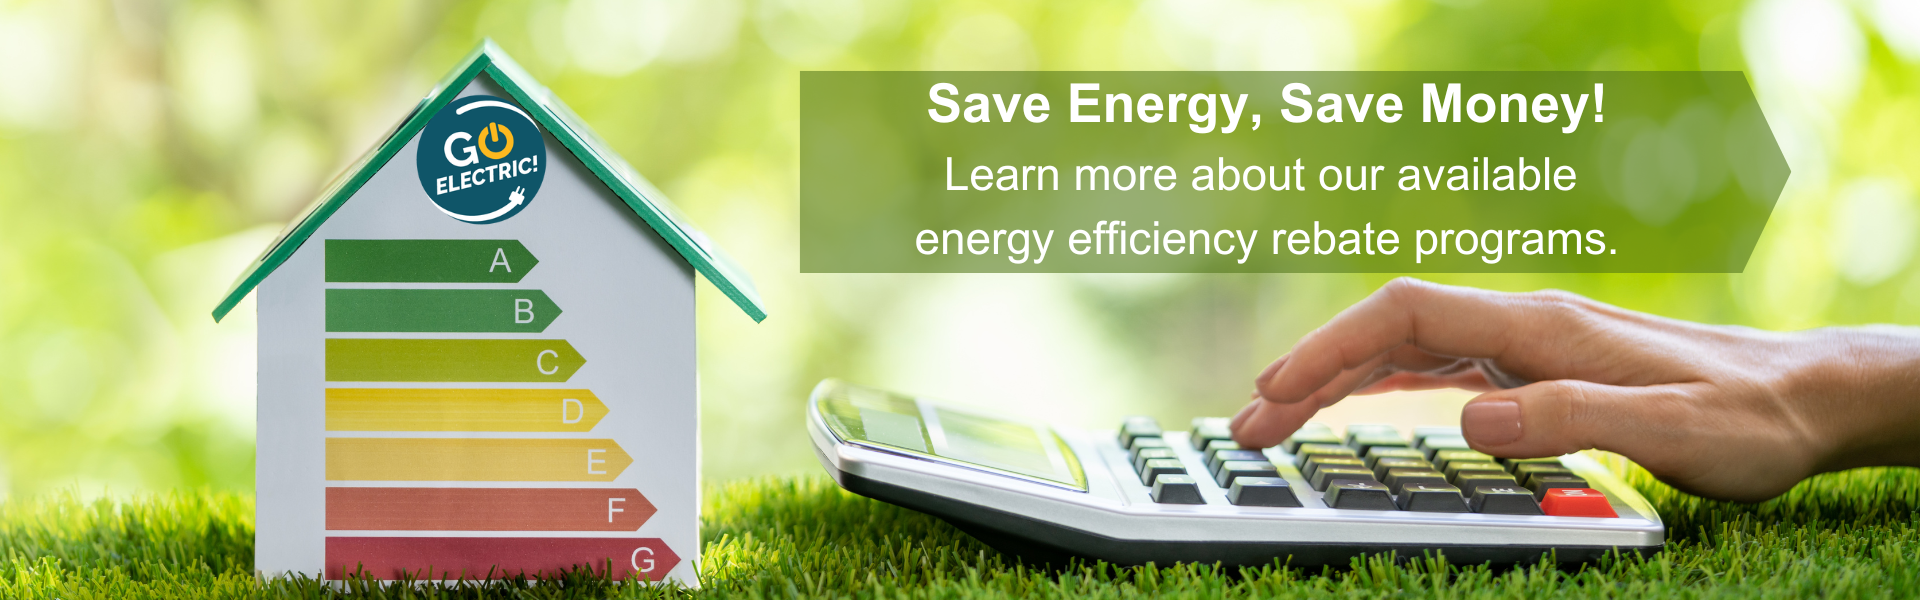 Energy efficiency rebate information